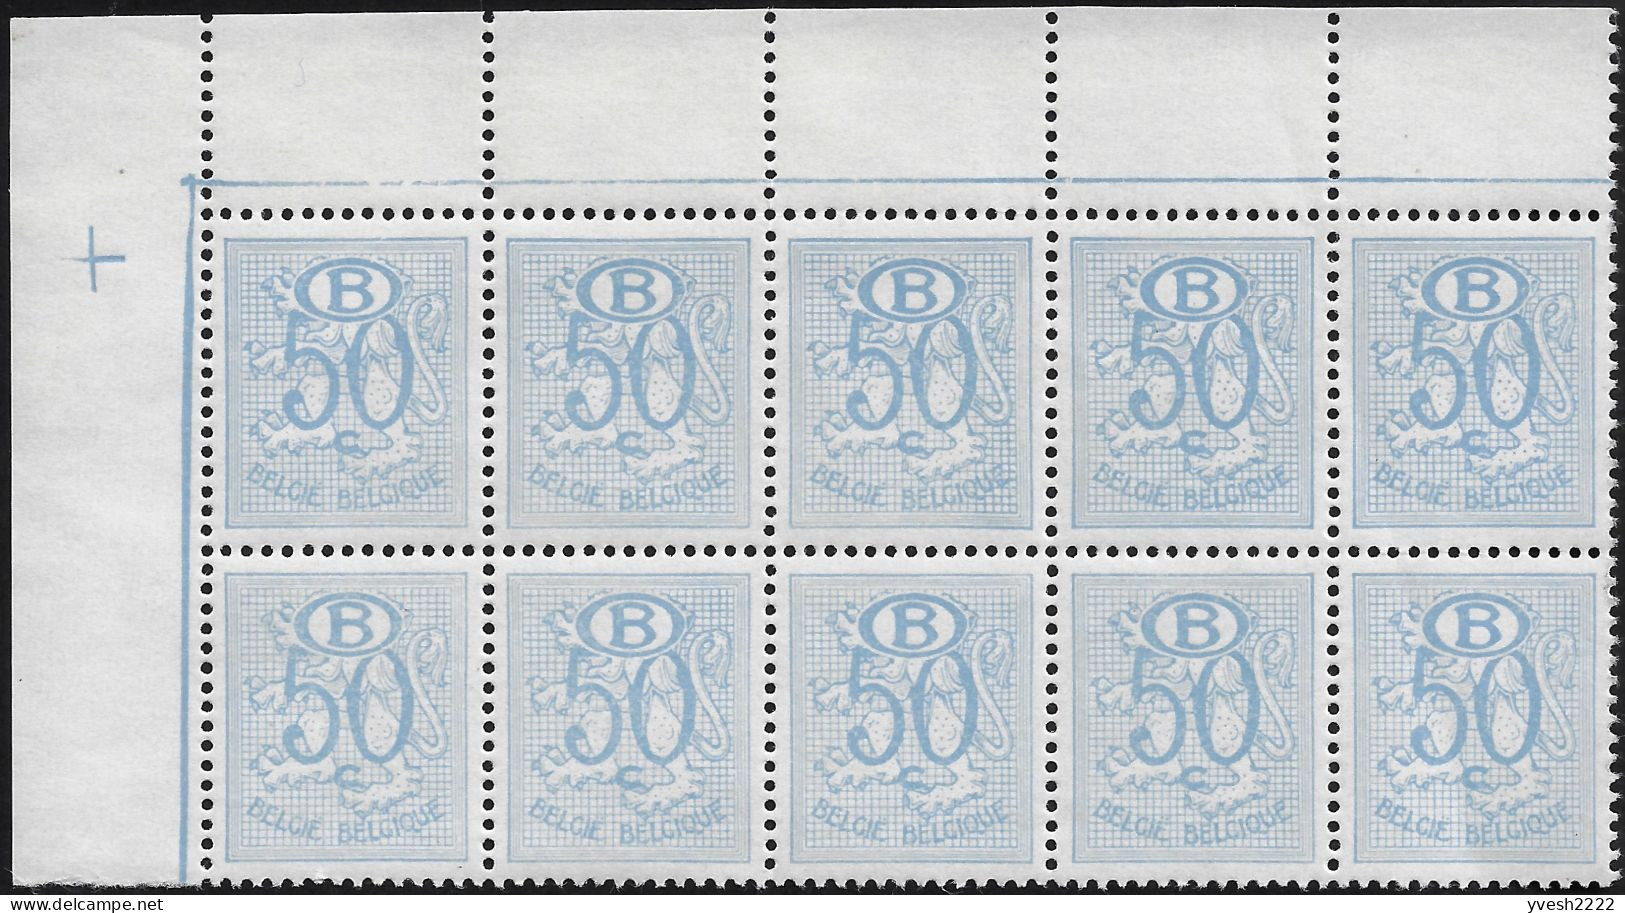 Belgique 1952 Y&T / COB S51 Et S51a +bloc De 10, Papier Blanc, Couleur Extrêmement Pâle (curiosité). Sans Charnières - 1951-1975 Lion Héraldique